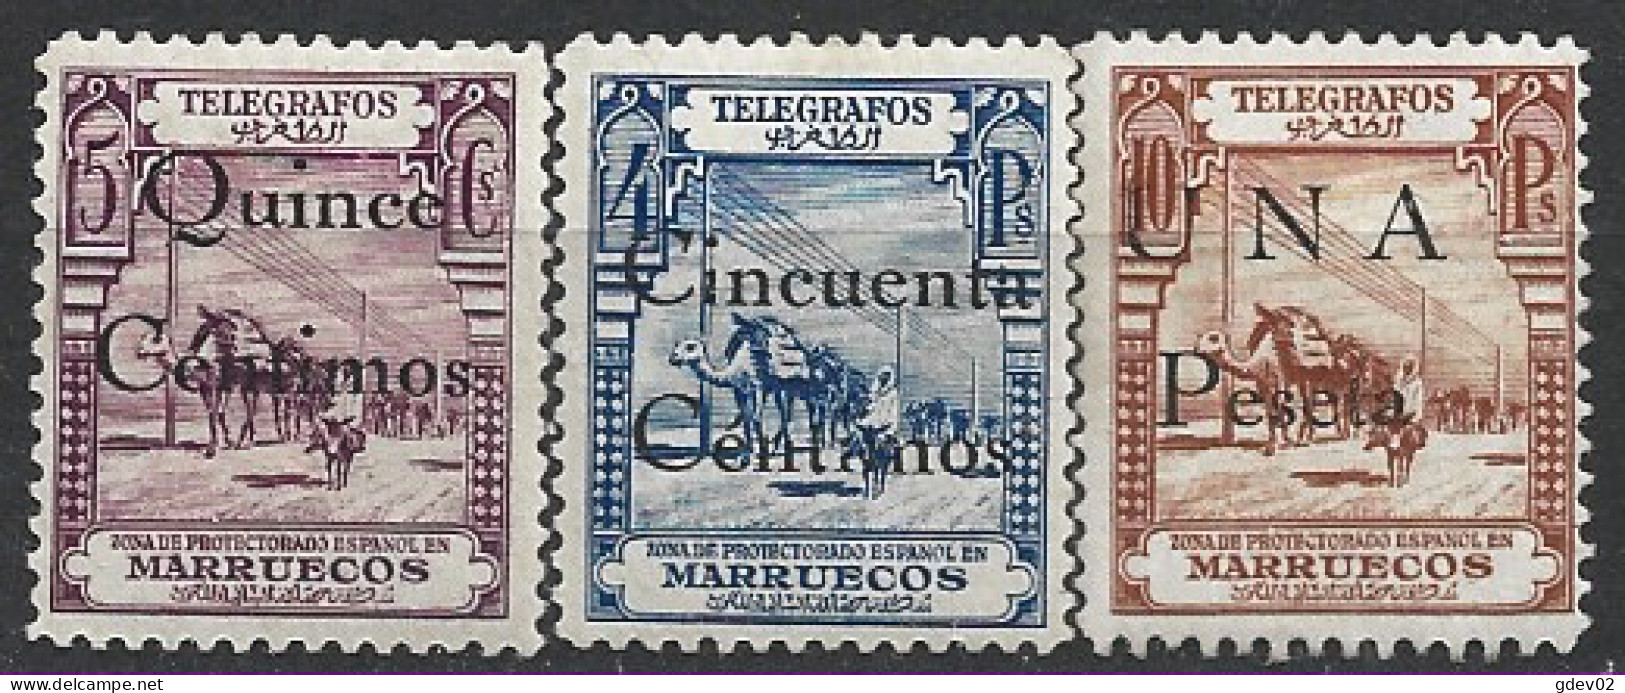 MATGF32/4**SCSF-L4430PC-TAFRICOMARR.Marruecos TELEGRAFOS.español.Maroc Spain.TIPOS DIVERSOS.( Ed 25/31*) - Maroc (1956-...)